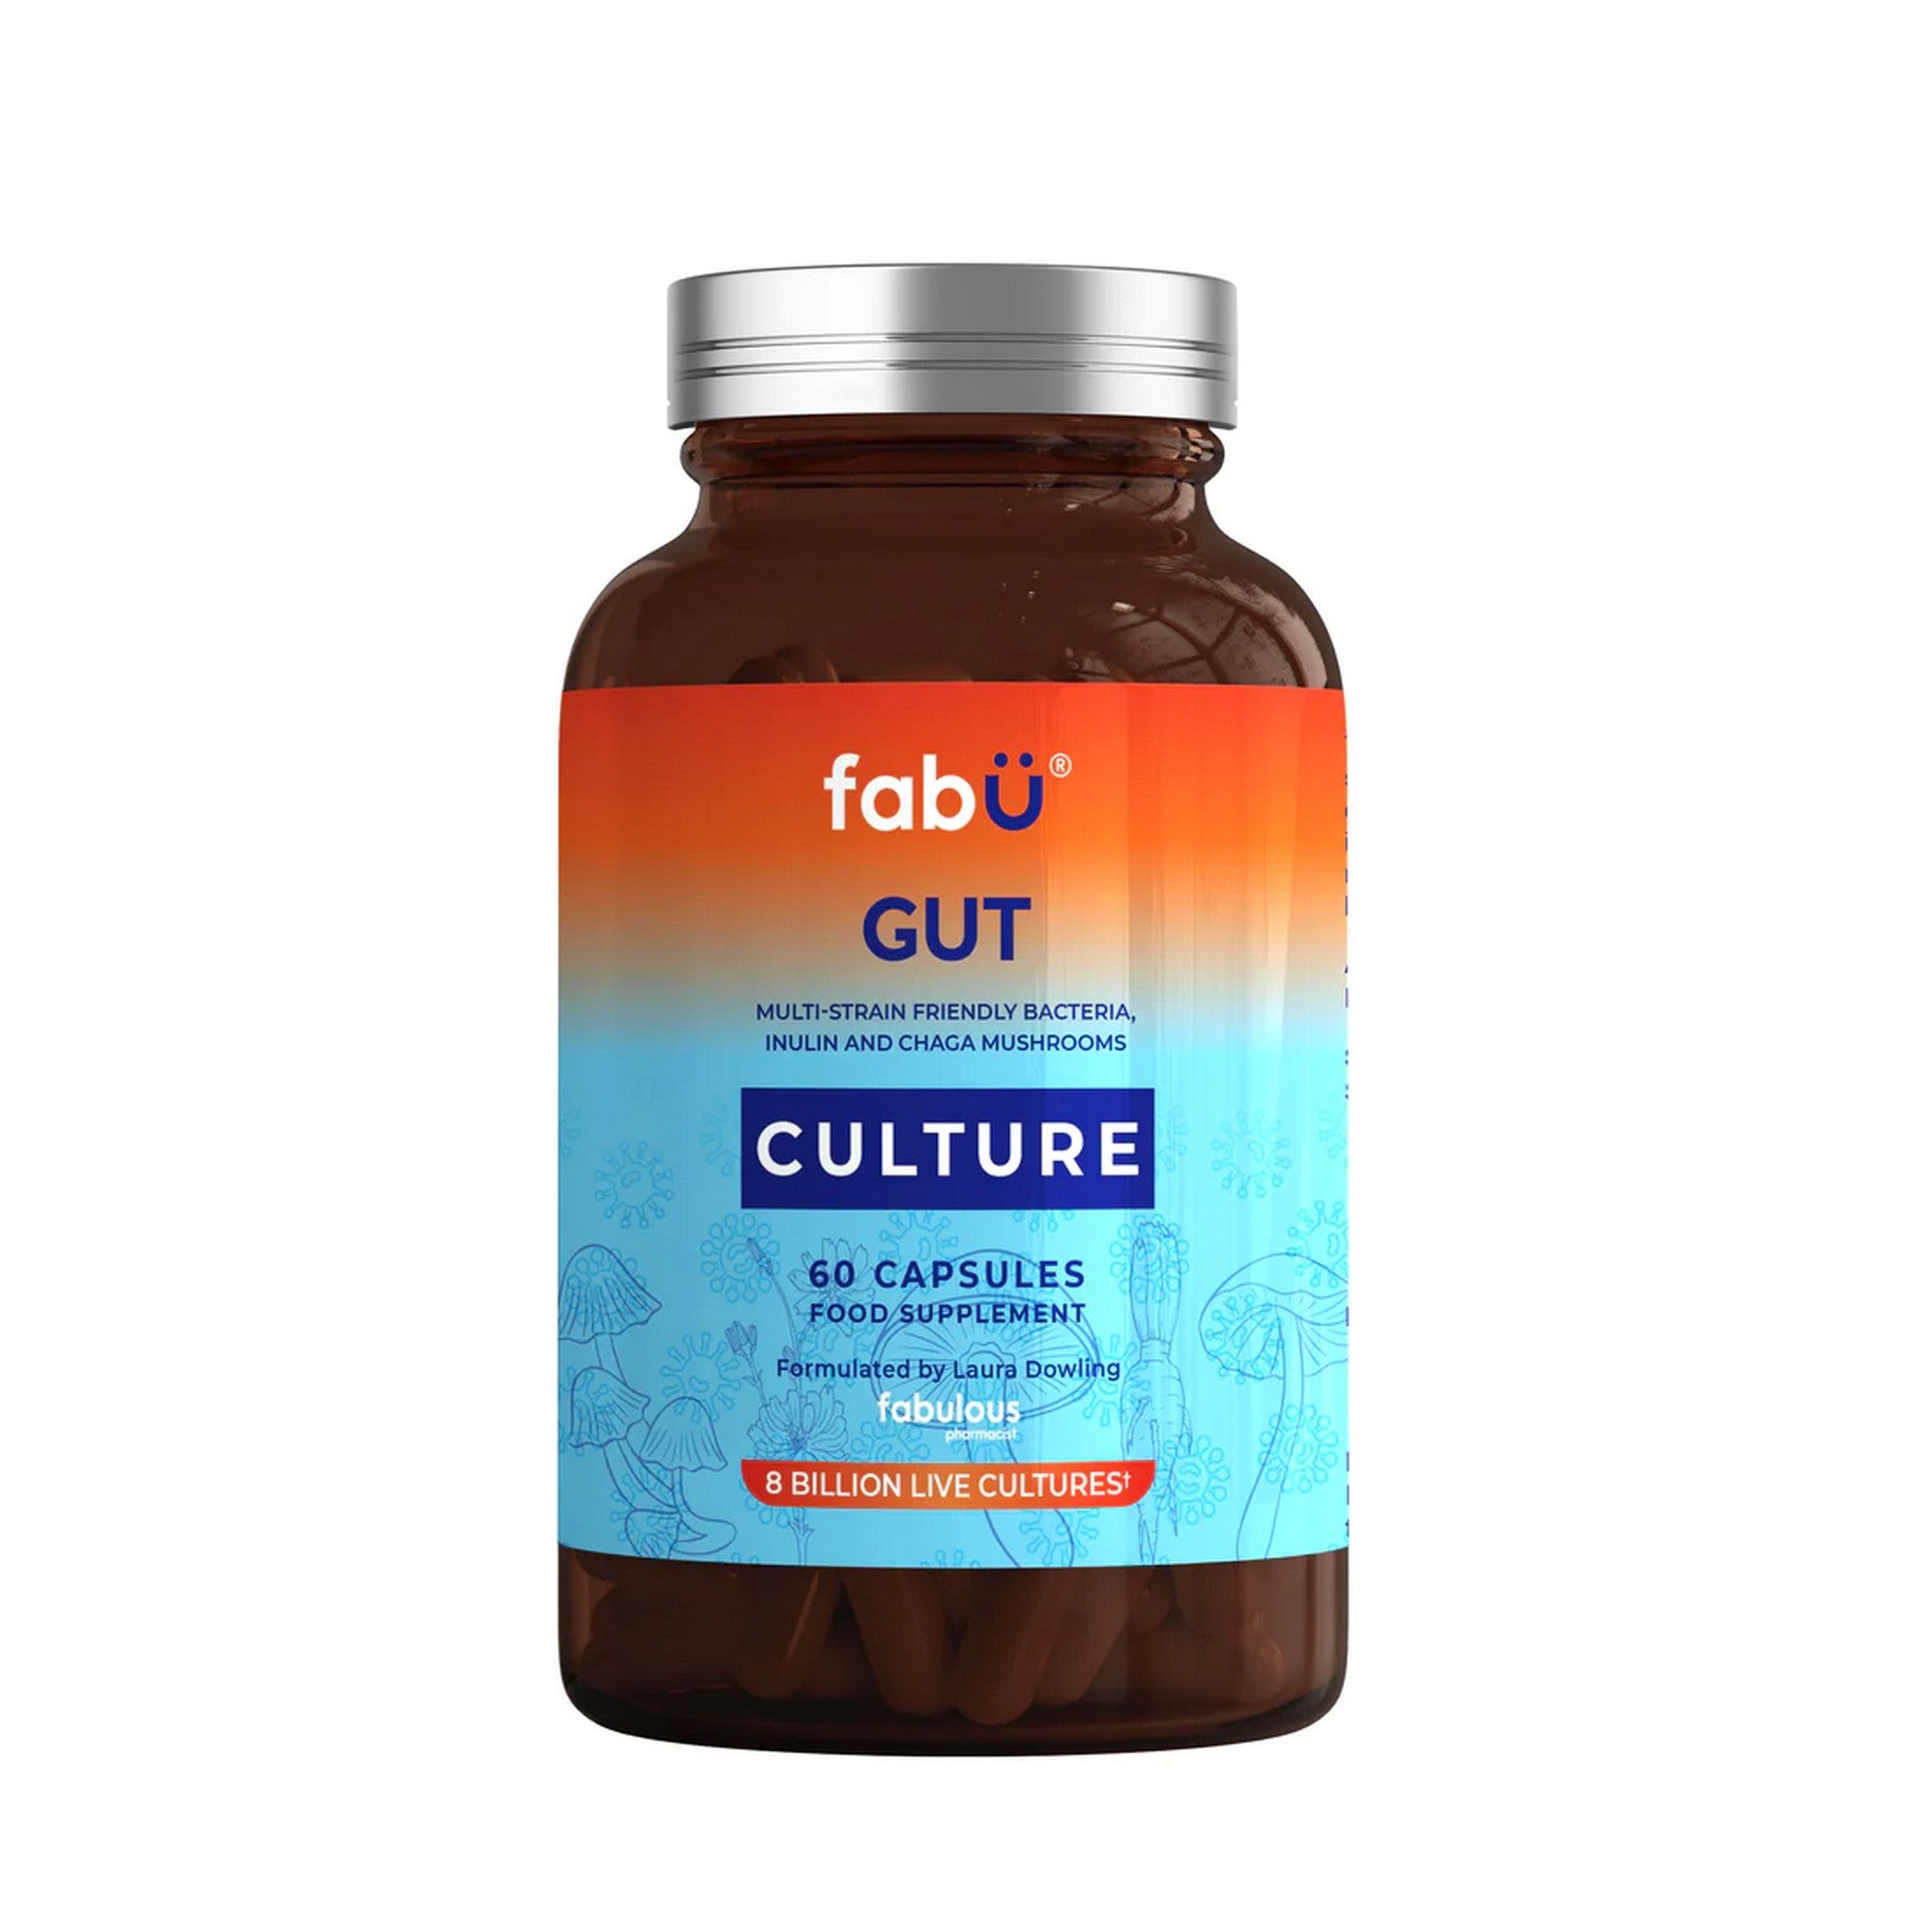 FabU Gut Culture 60 Capsules bottle